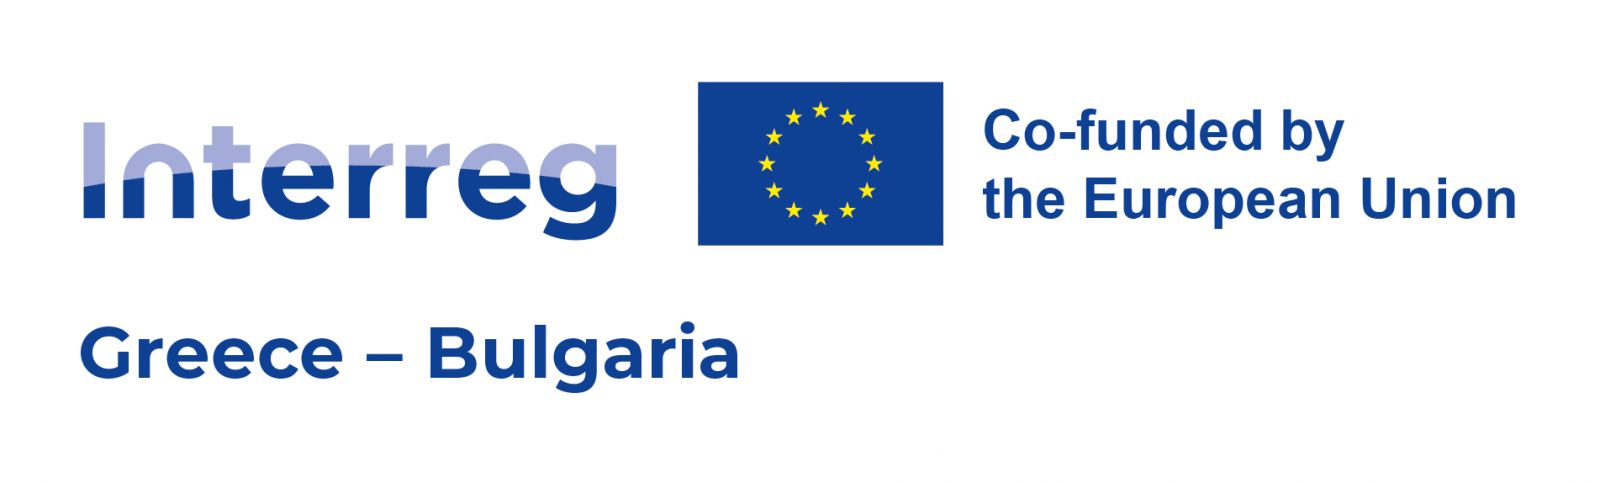 ΣΗΜΕΡΑ: Συνεδριάζει η Δημοτική Επιτροπή με κεντρικό θέμα το INTERREG (12:00)